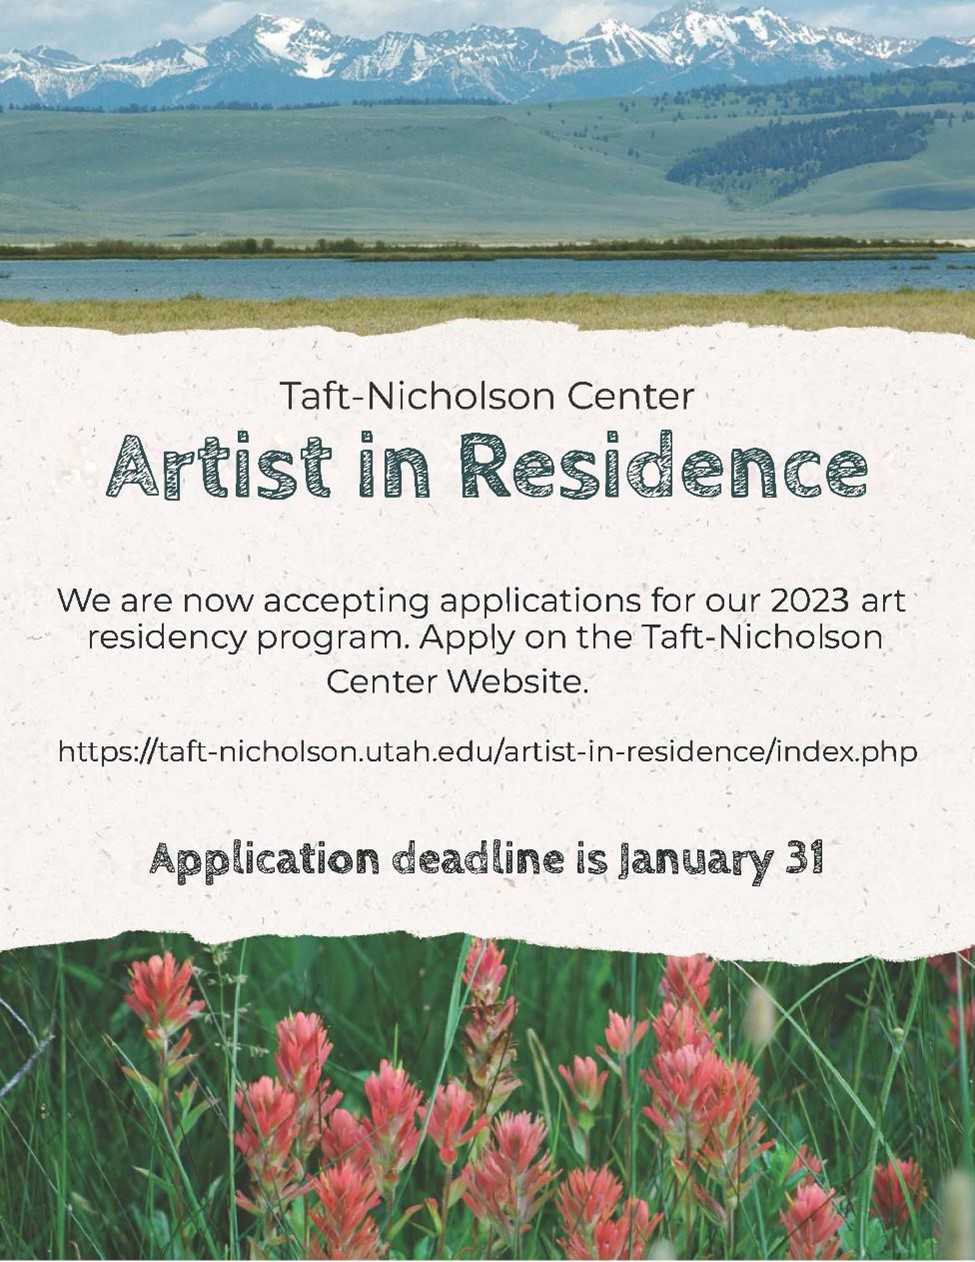 Tast-Nicholson Center Artist in Residence